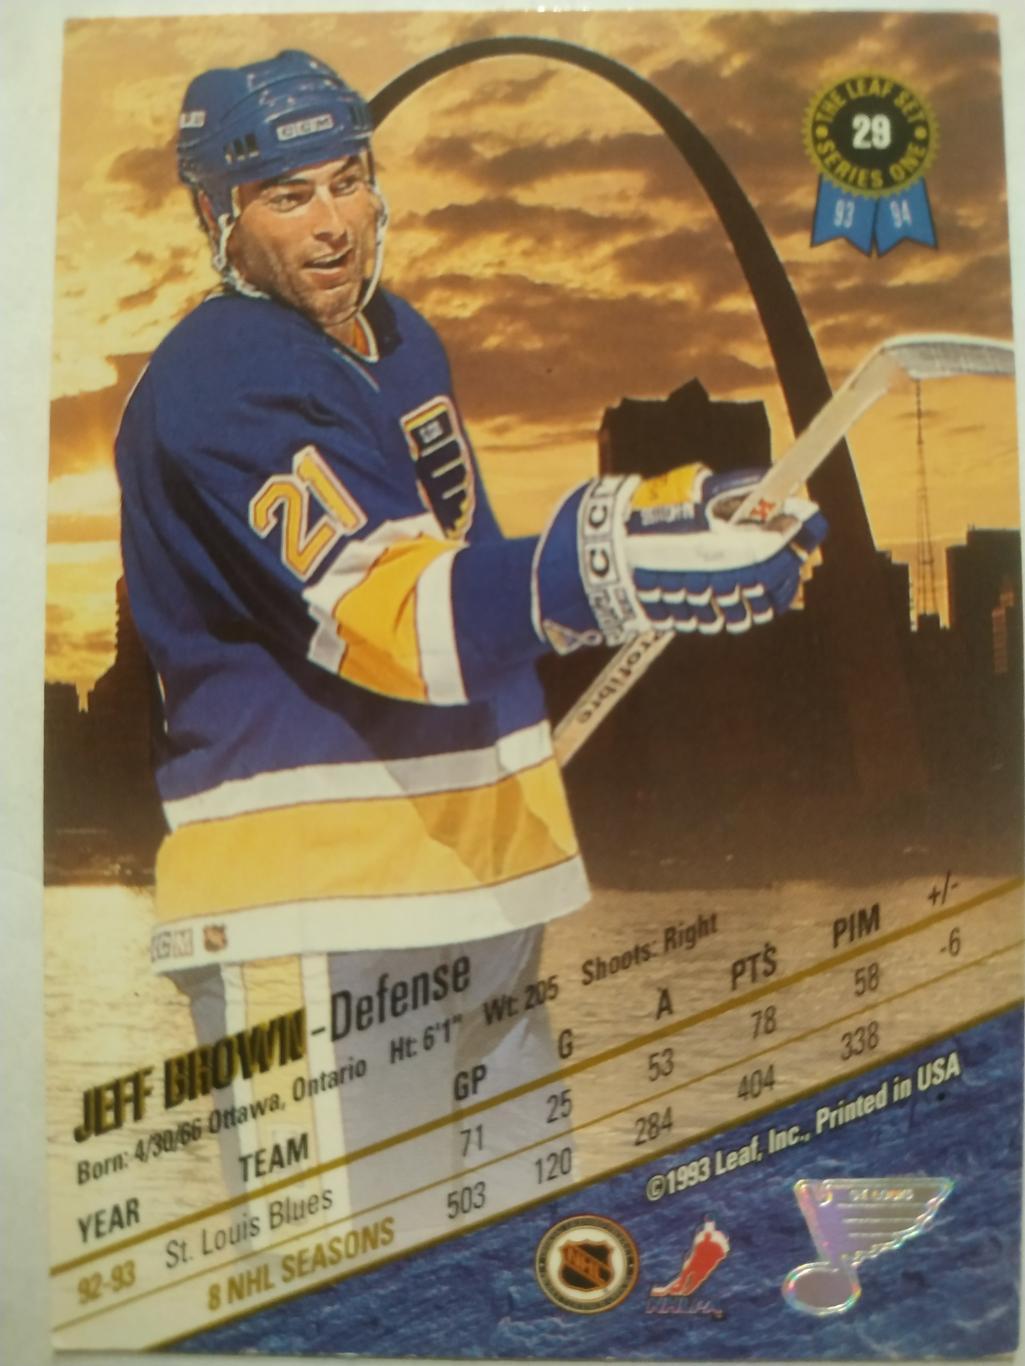 ХОККЕЙ КАРТОЧКА НХЛ LEAF SET SERIES ONE 1993-94 JEFF BROWN ST. LOUIS BLUES #29 1